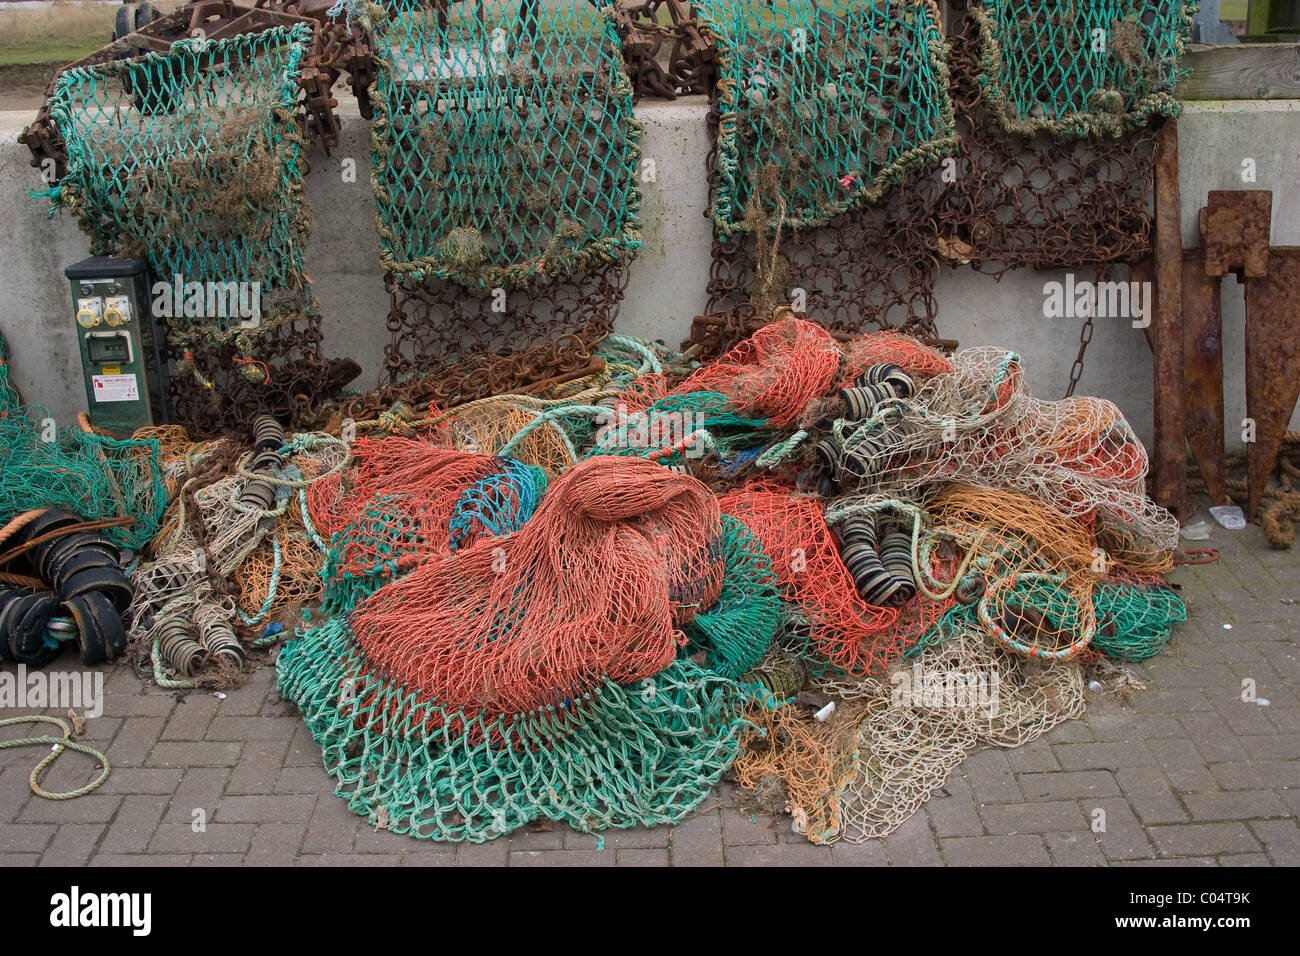 sea fishing trawling nets Stock Photo